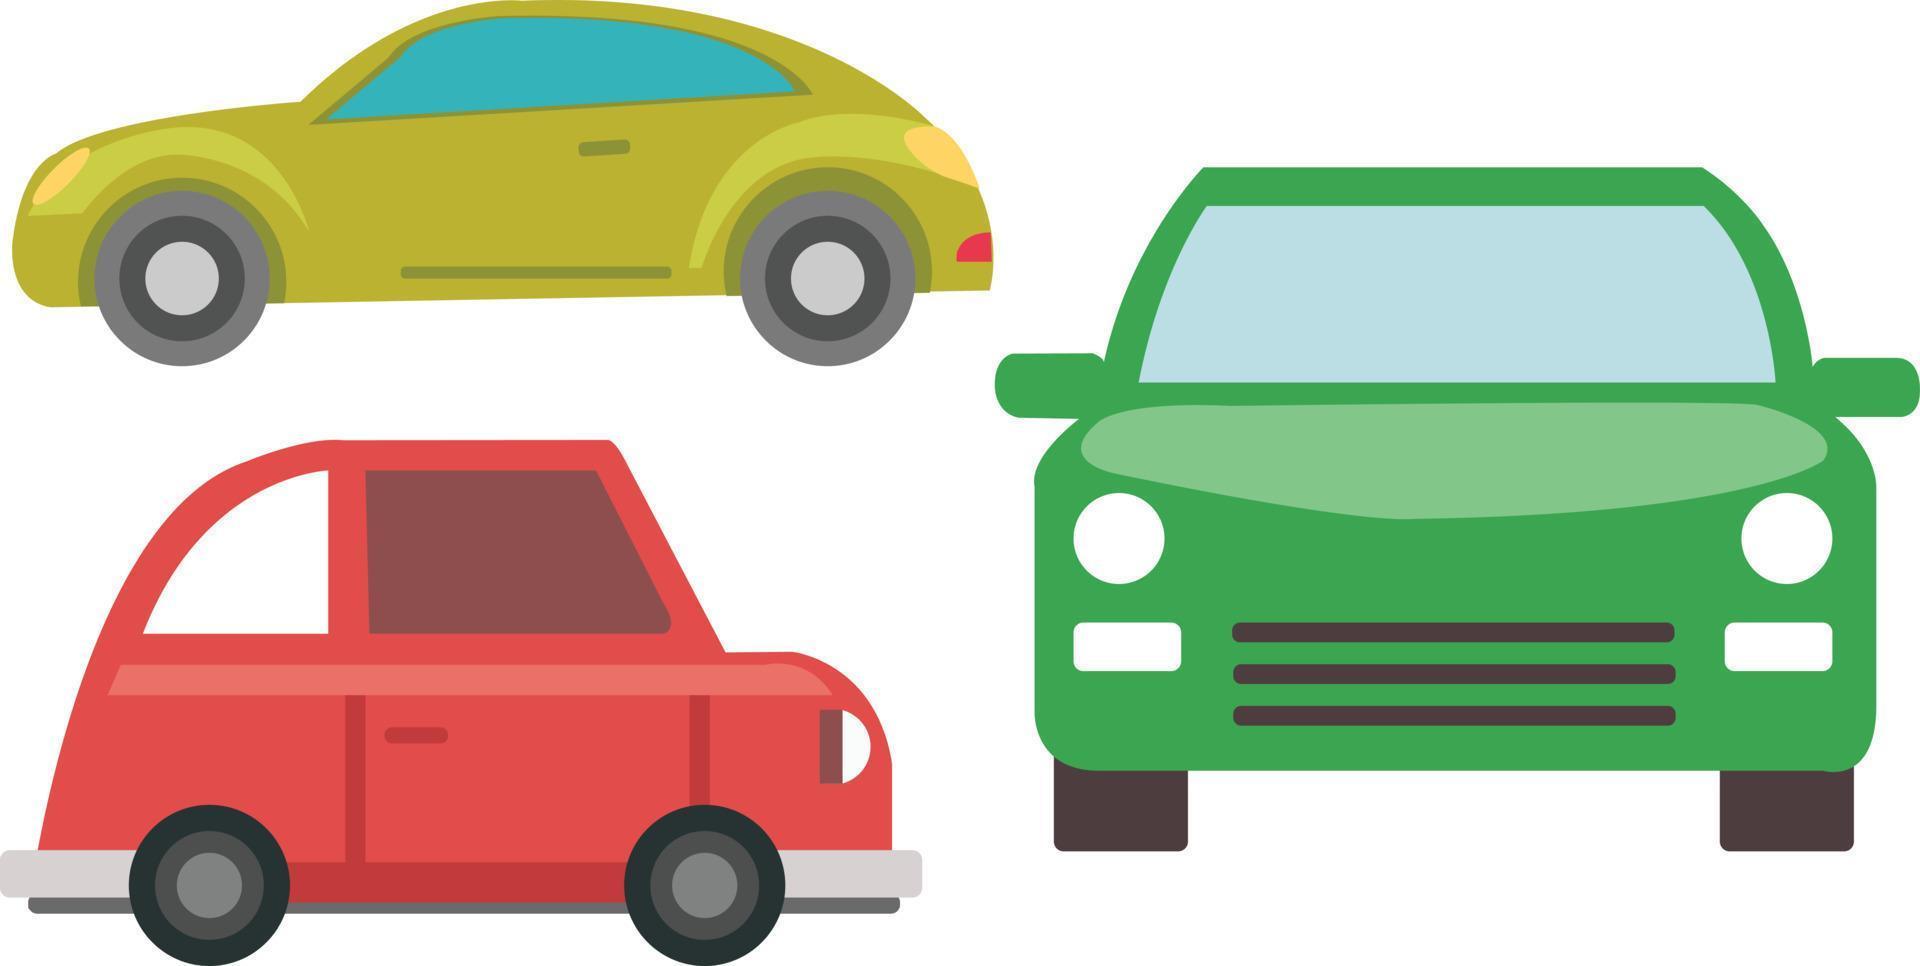 conjunto de tres coches con diferentes ángulos de visión y color del coche. vector